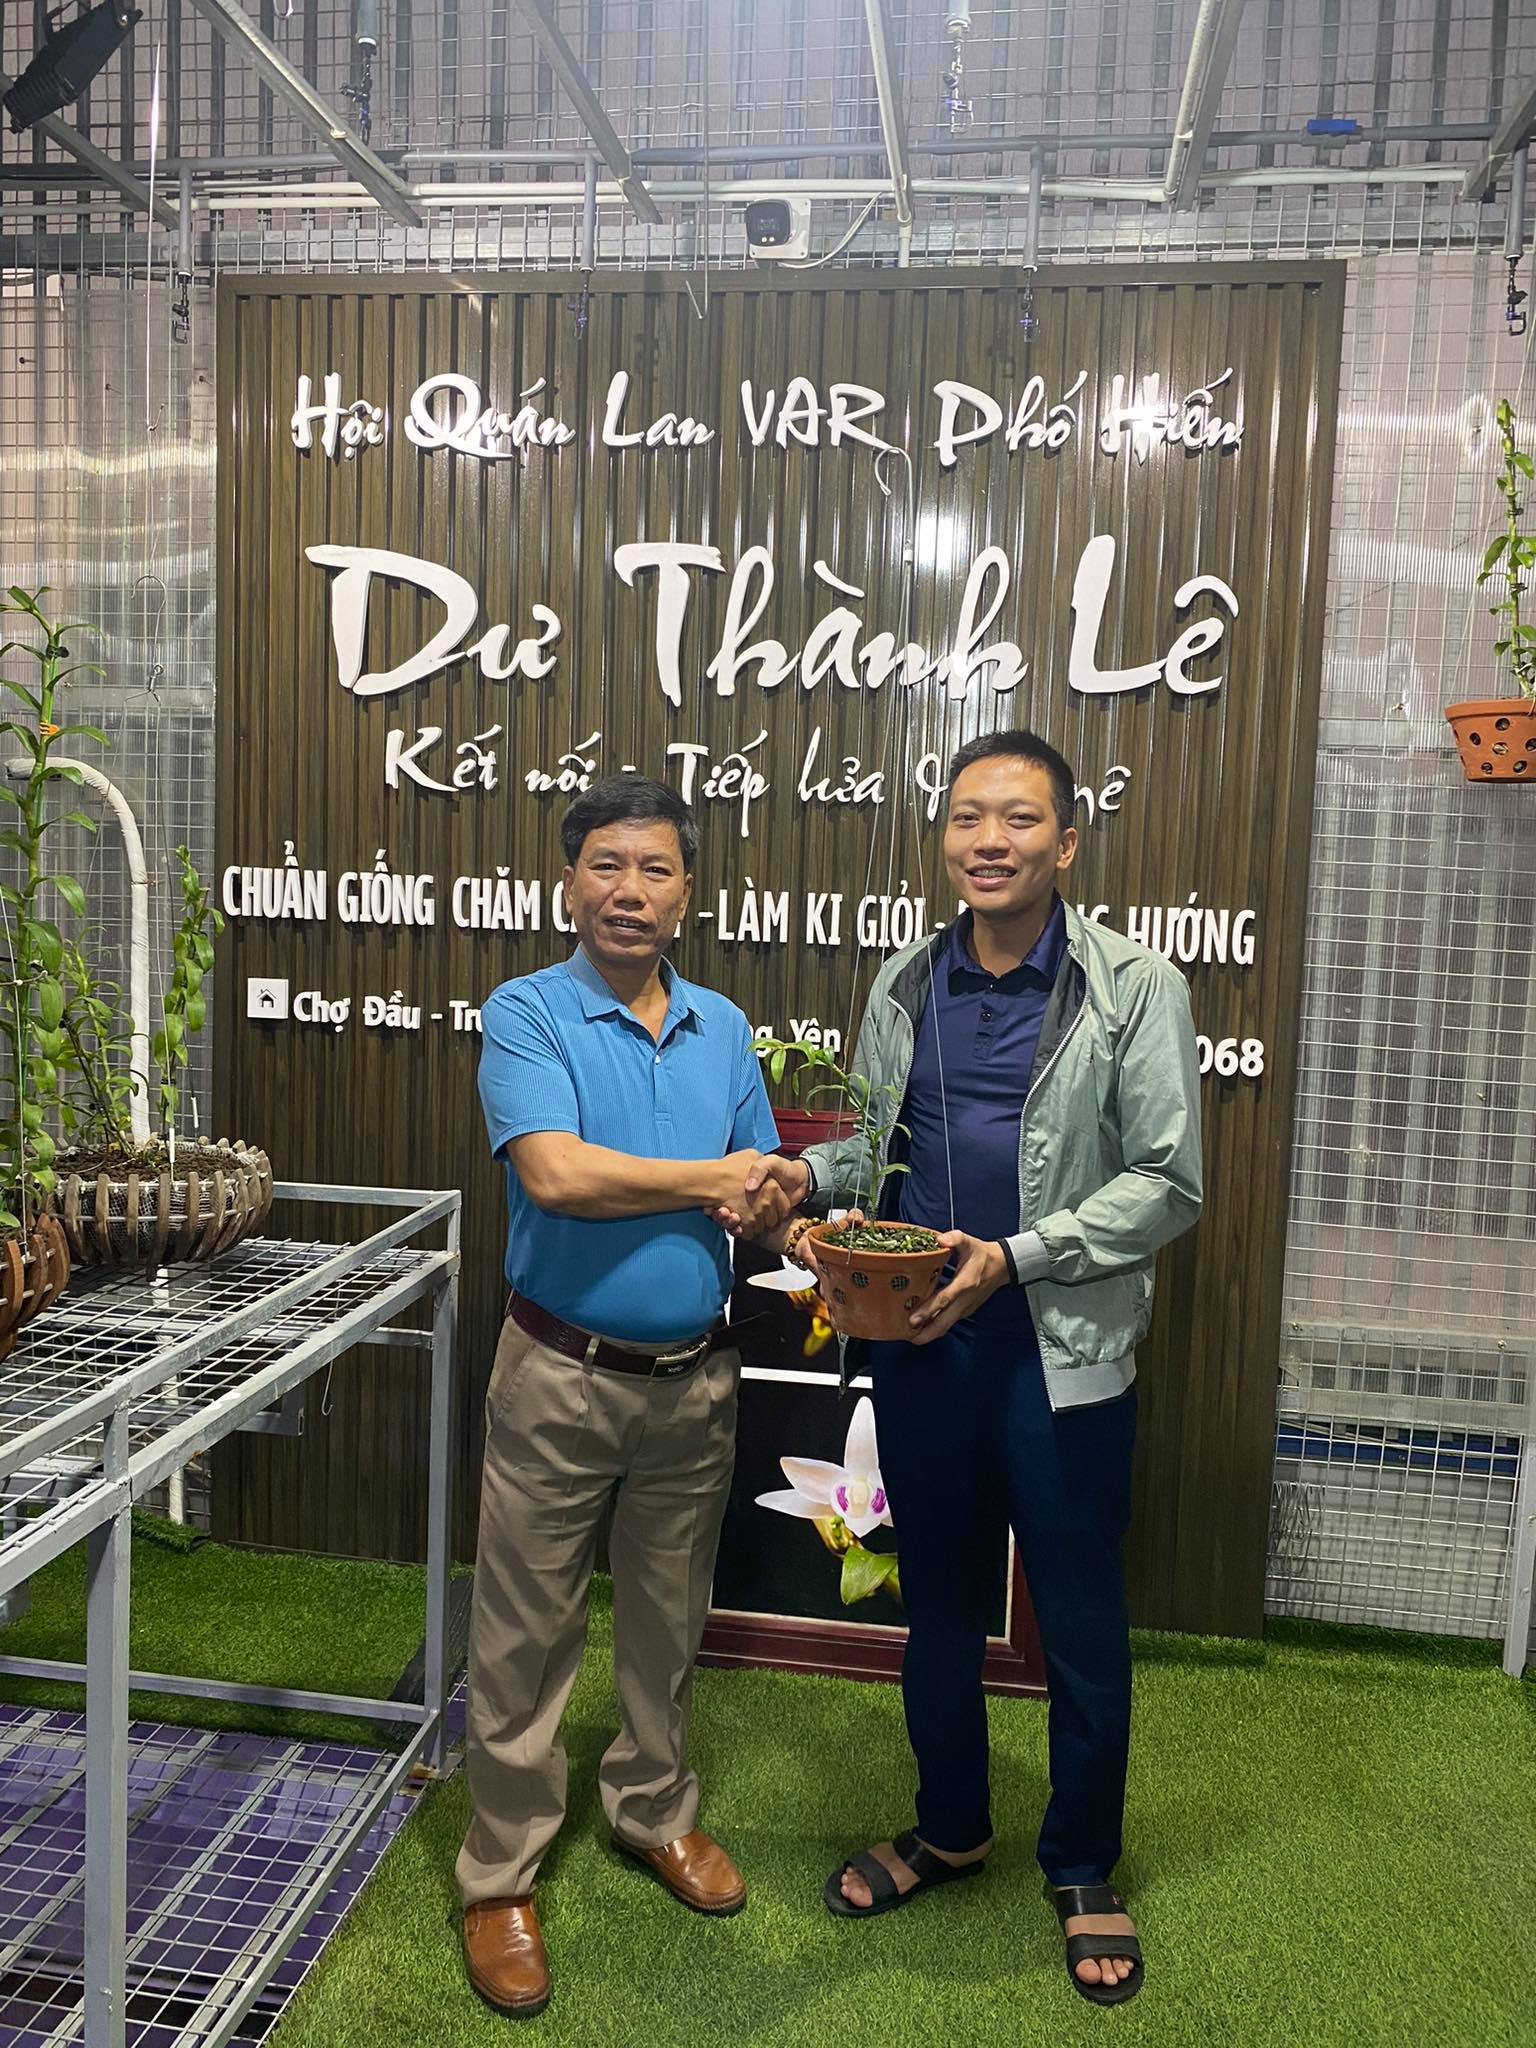 Ông chủ vườn lan đột biến Lê Thành Dư chia sẻ chuyện khởi nghiệp